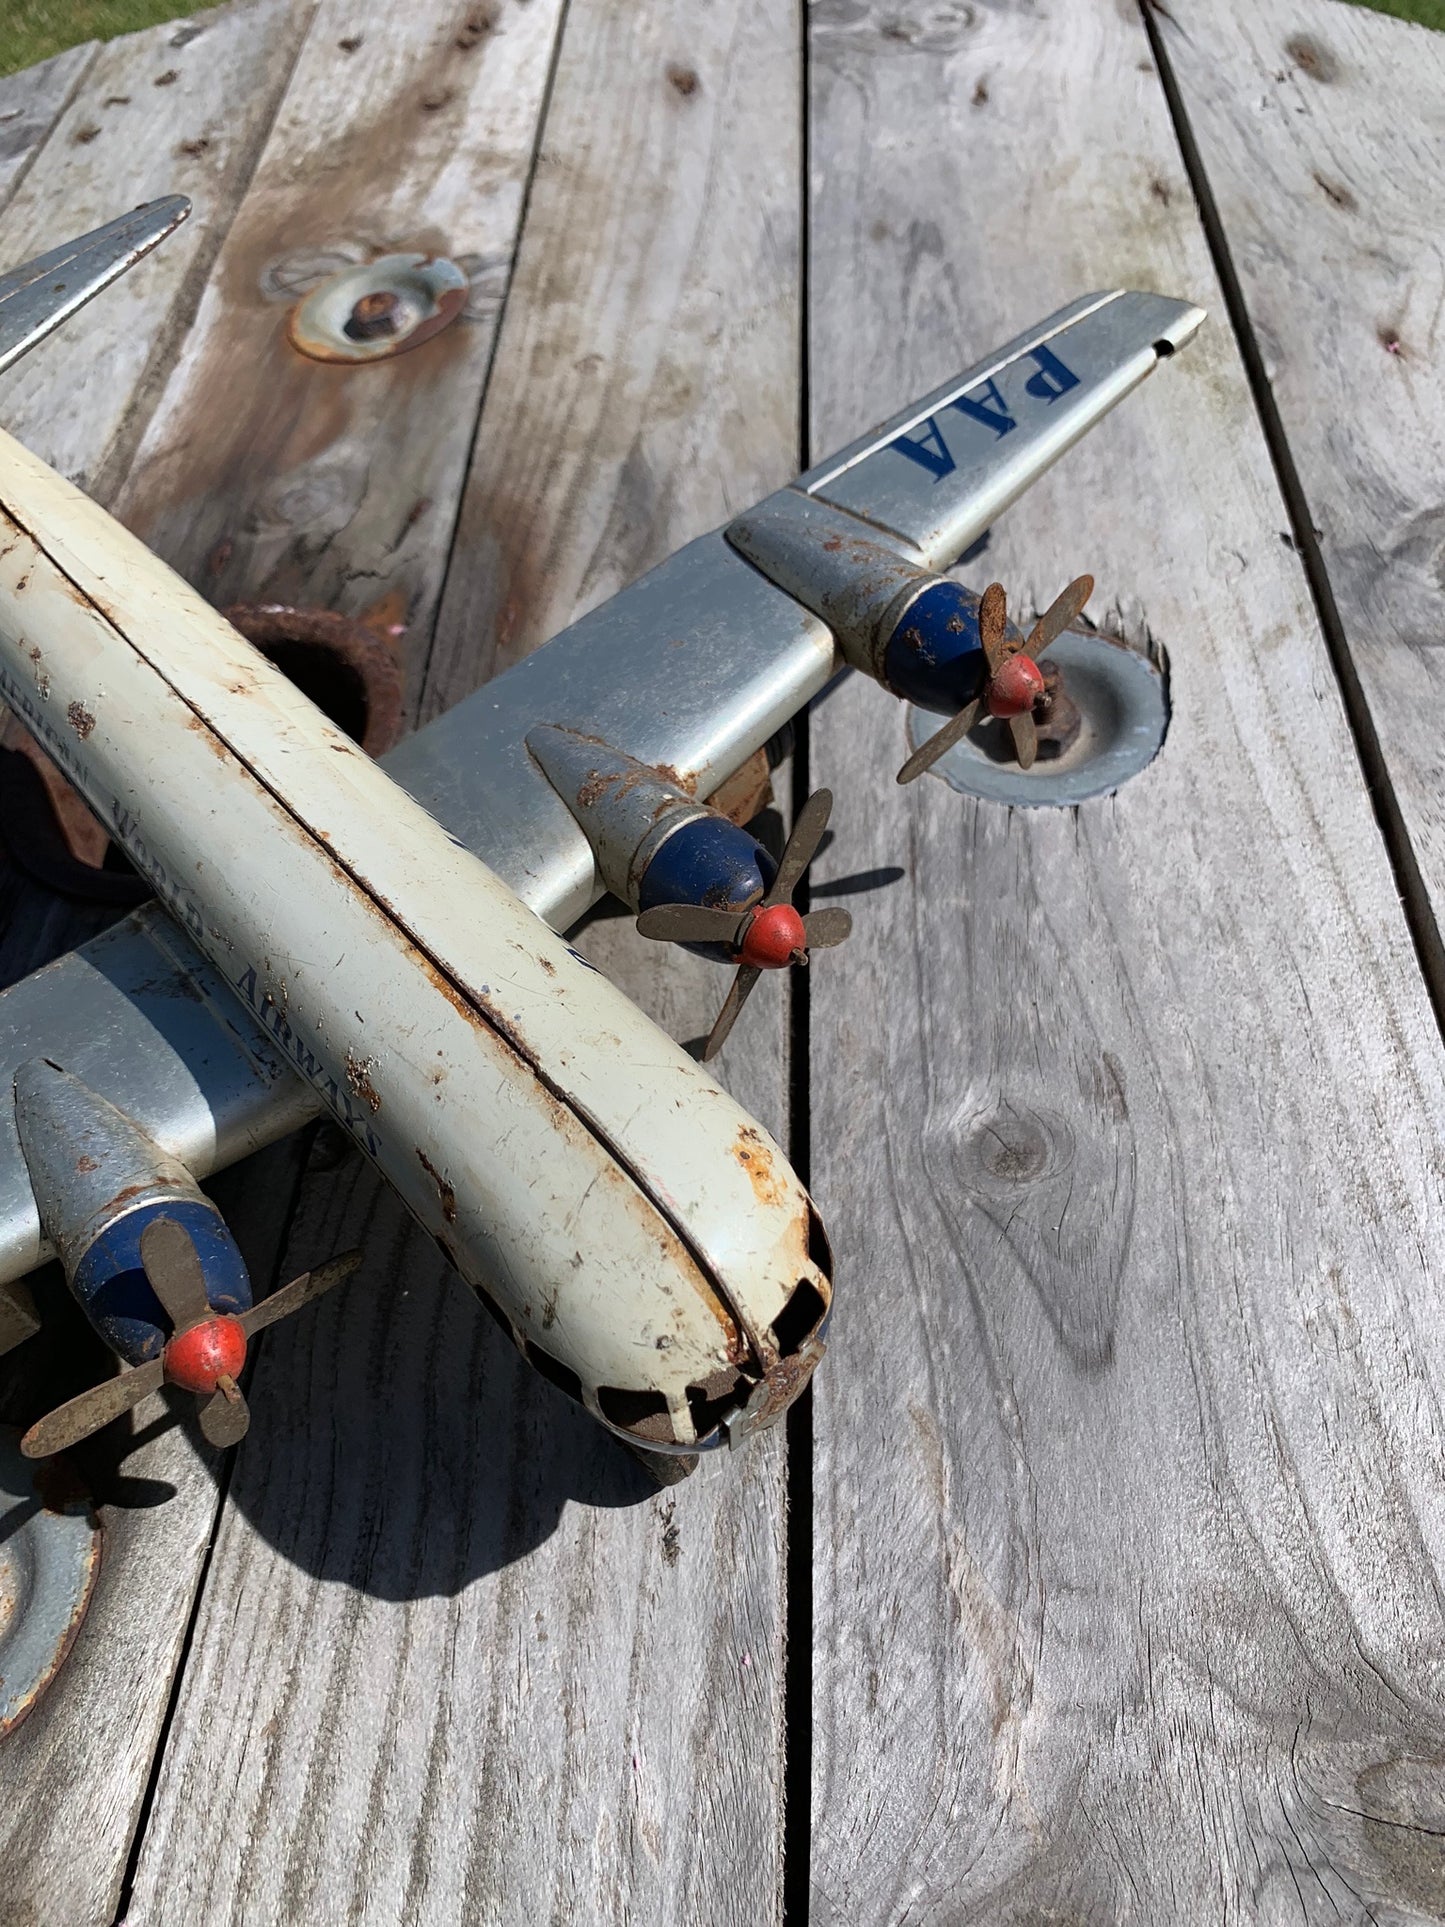 Gammel legetøjsflyver fra 1950’erne